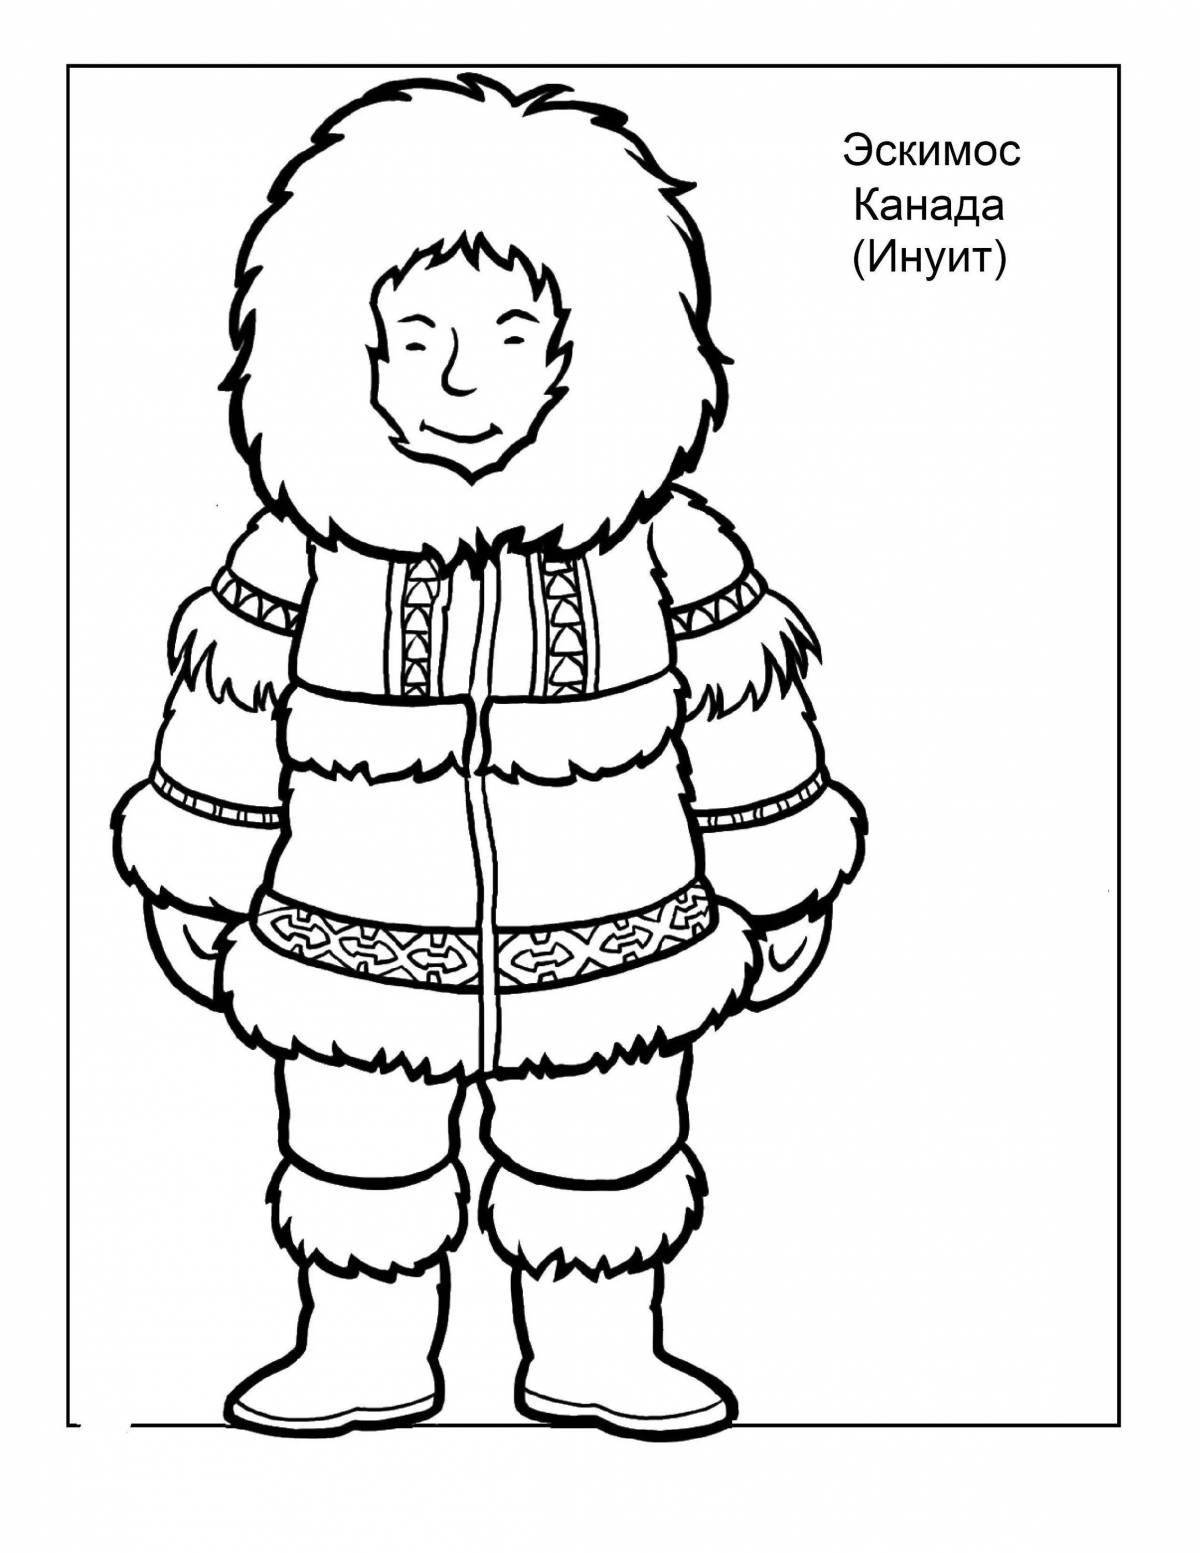 Animated coloring book for Eskimo children